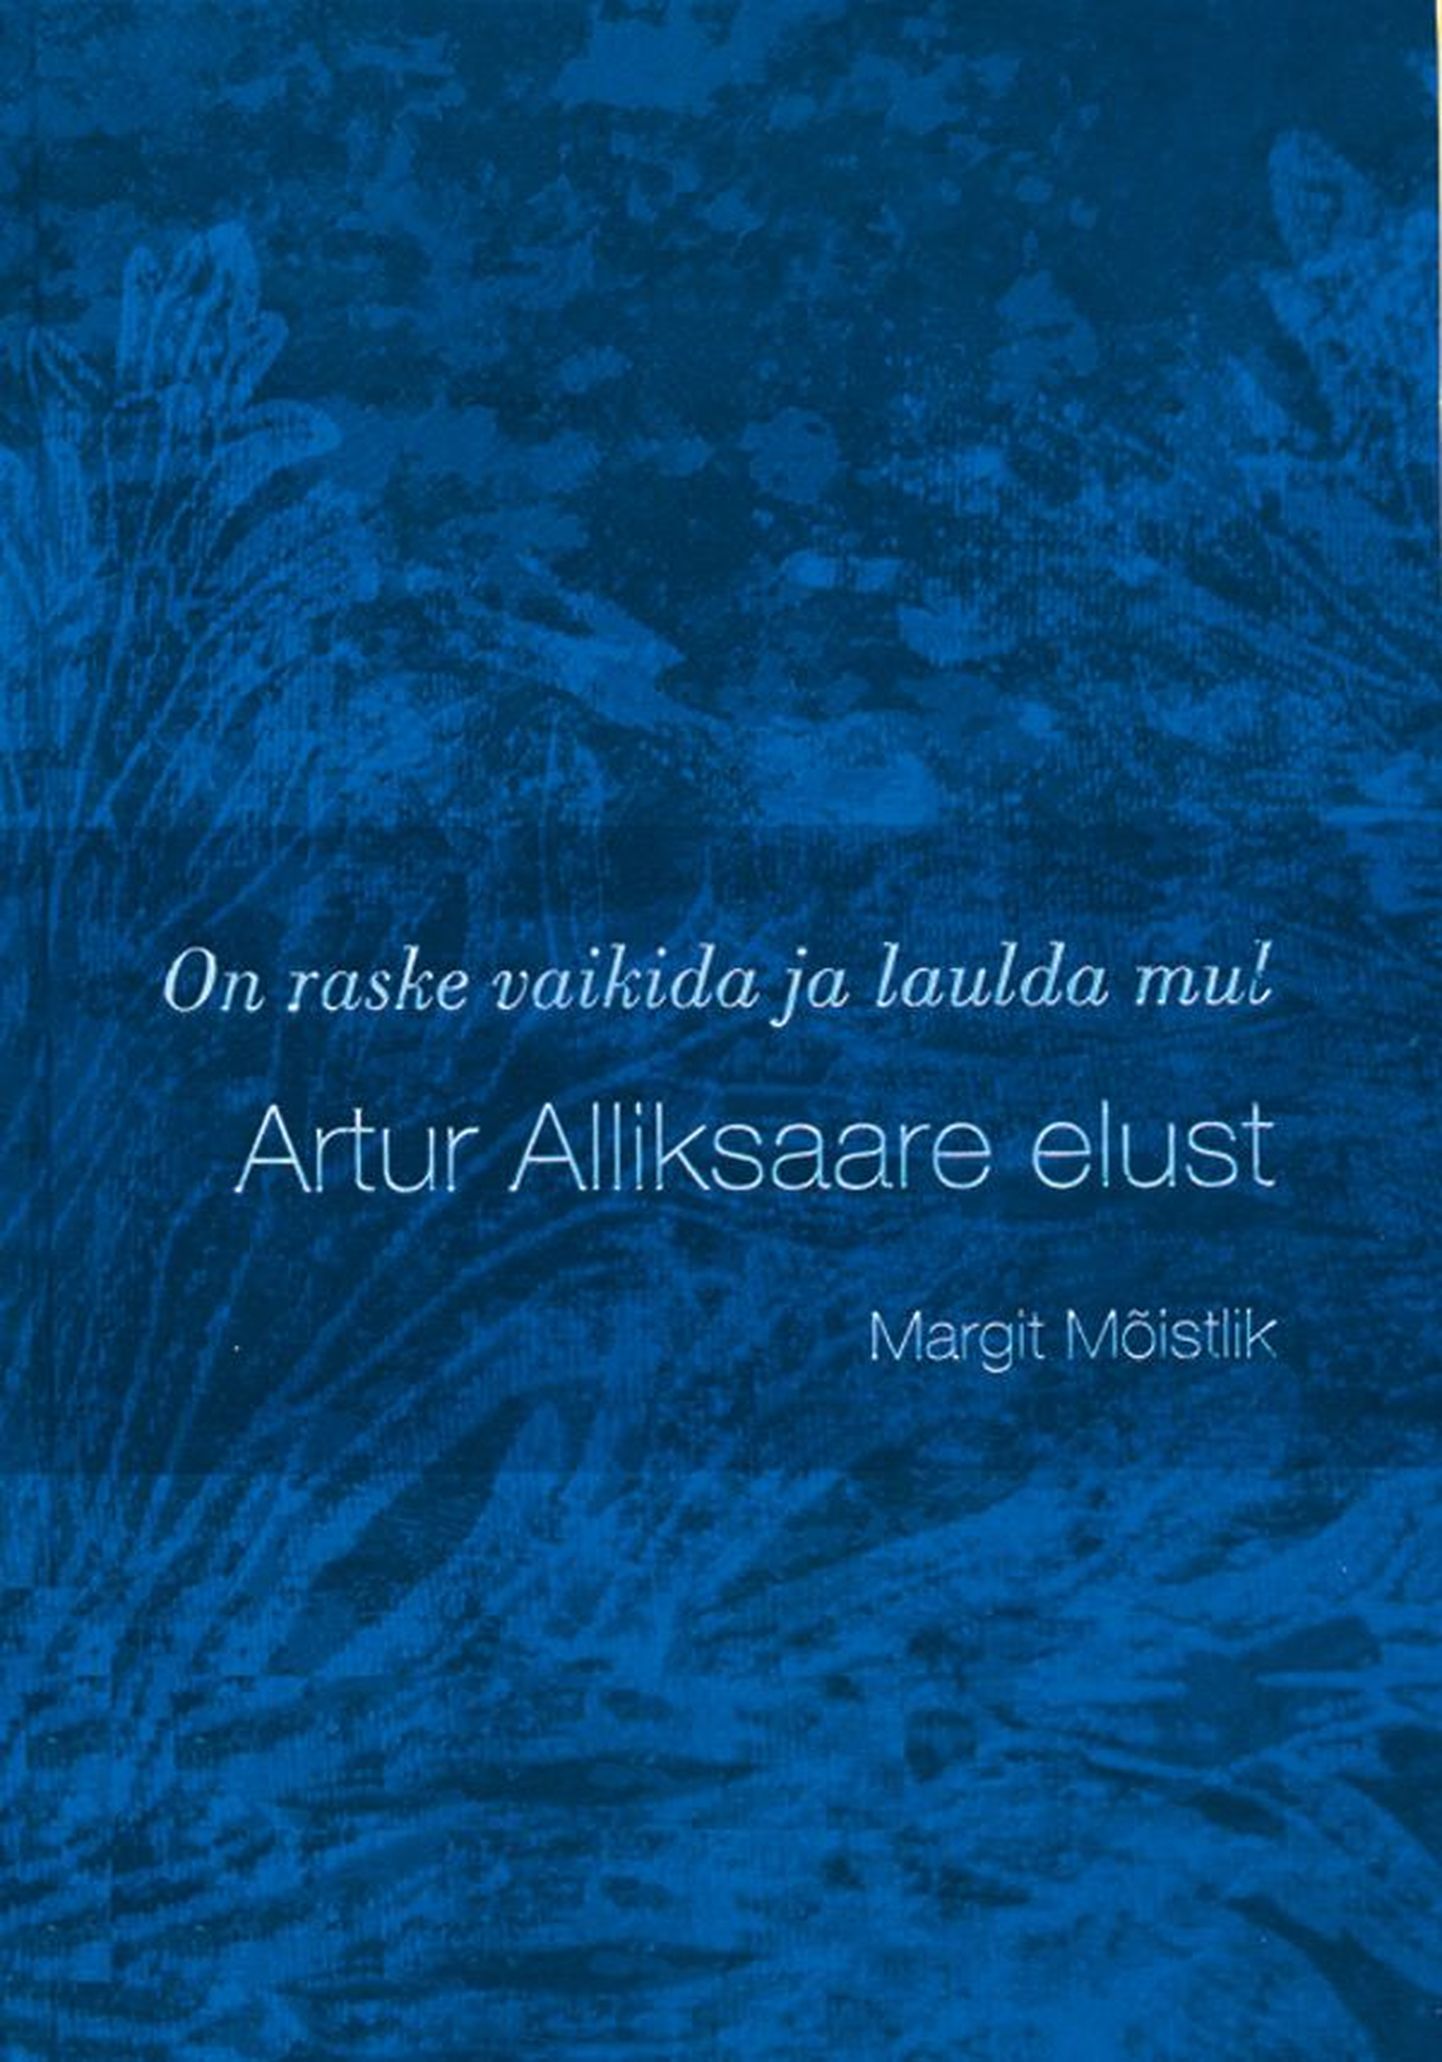 Margit Mõistlik, «On raske vaikida ja laulda mul. Artur Alliksaare elust», 
Menu kirjastus, 
Tallinn 2011, 208 lk.